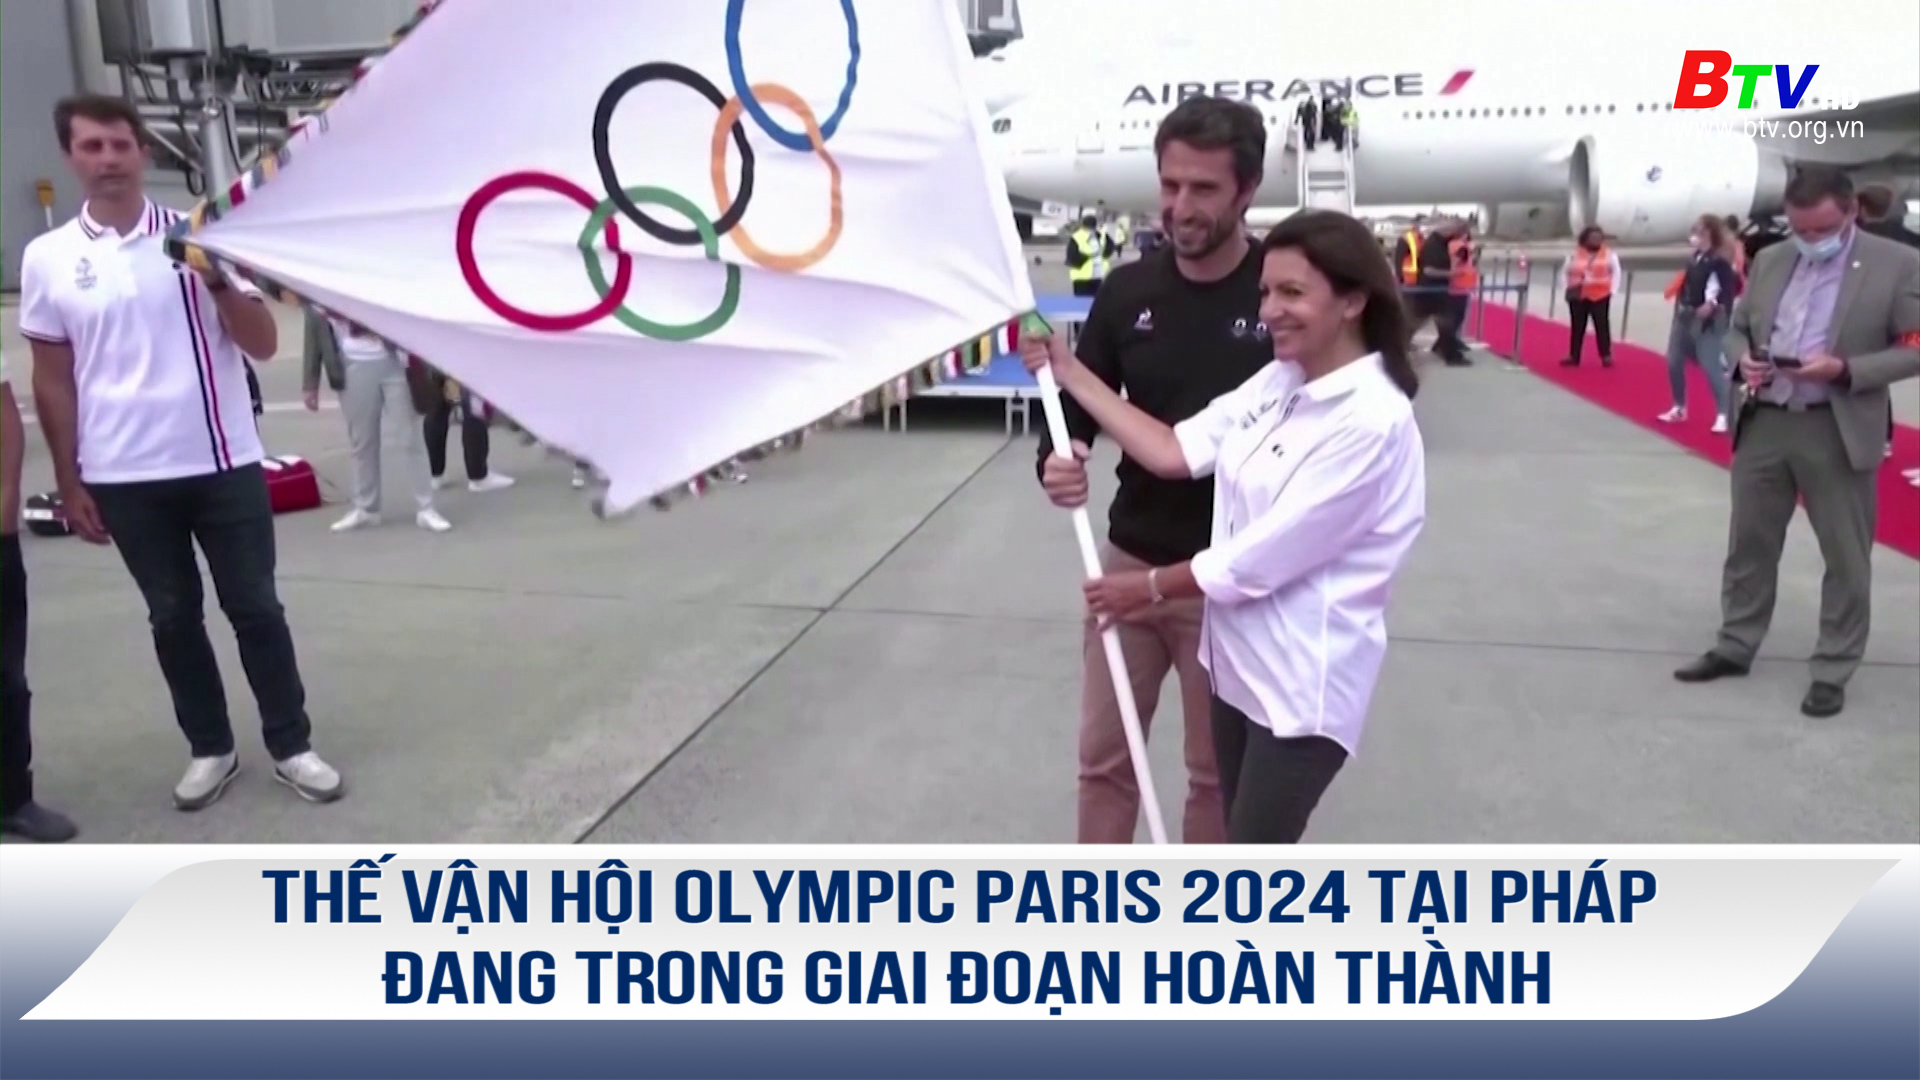 Thế vận hội Olympic Paris 2024 tại Pháp đang trong giai đoạn hoàn thành